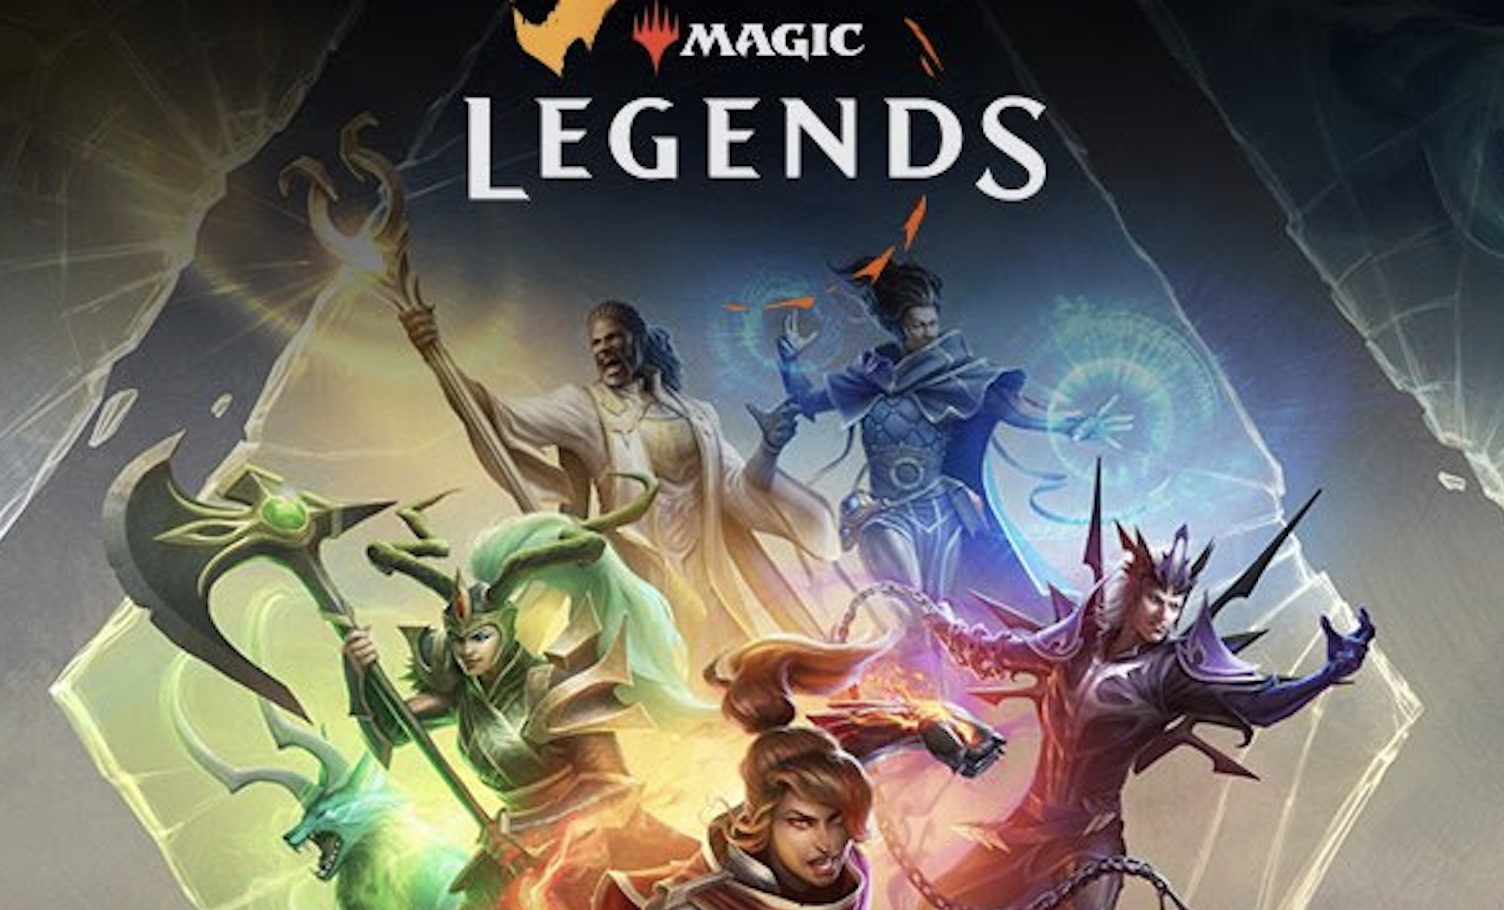 Mtgハクスラ Magic Legends 21年3月23日オープンベータ開始 速攻mtg